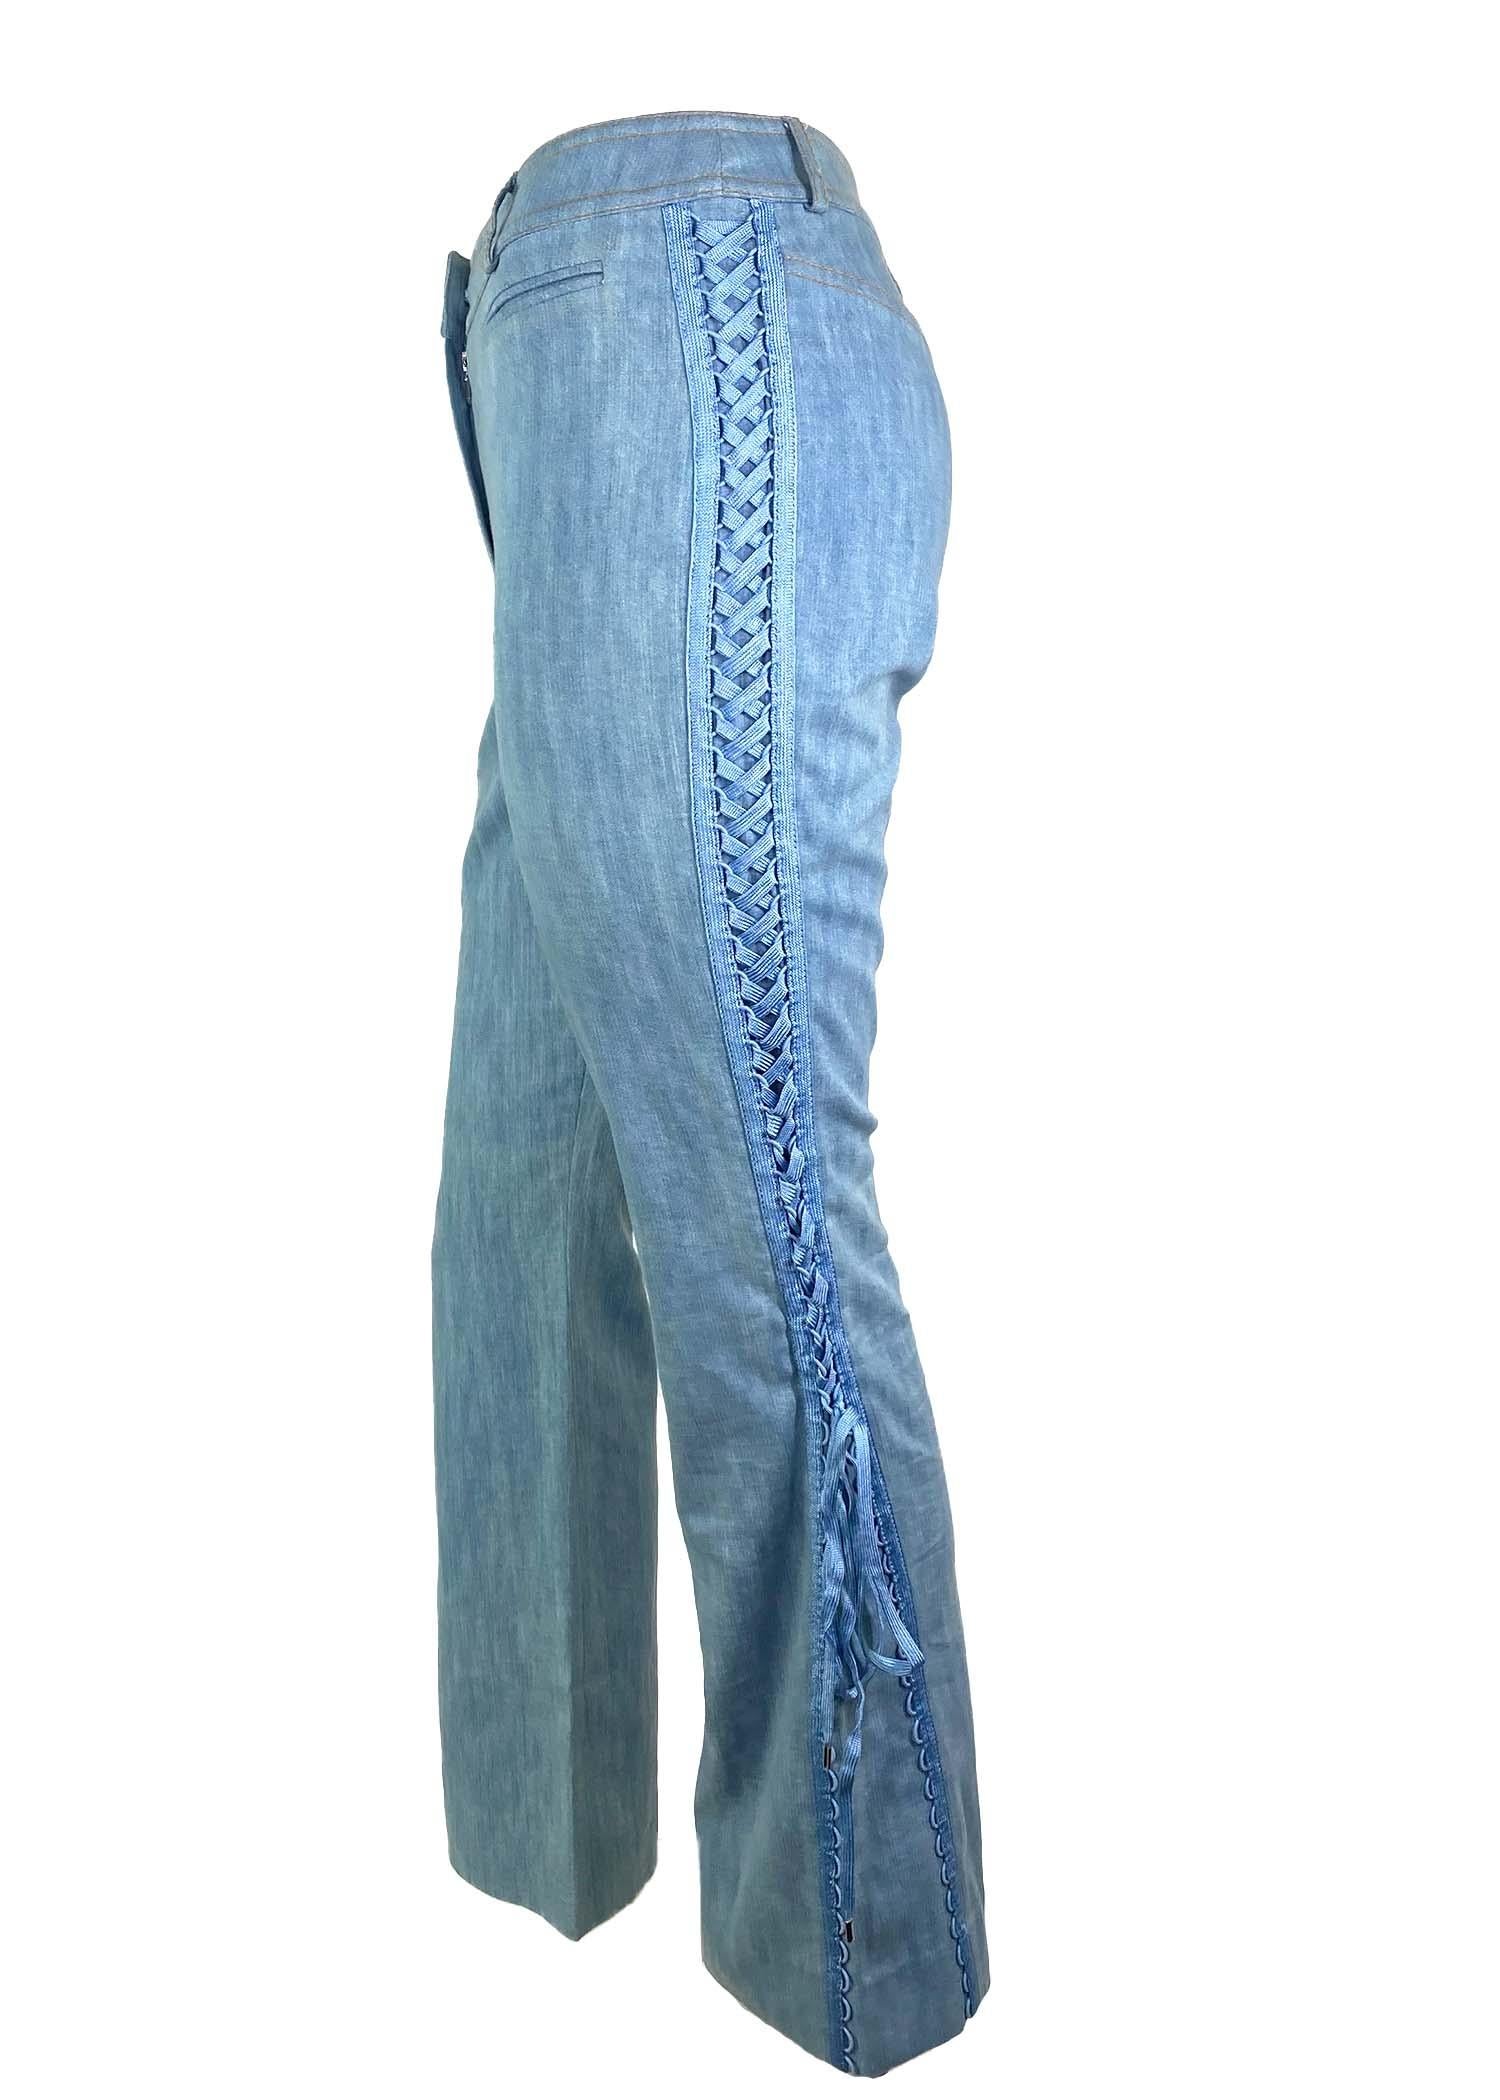 Présentation d'un pantalon de chambray Christian Dior à coupe boot cut et à lacets, dessiné par John Galliano. Issu de la collection Automne/Hiver 2002, ce pantalon incroyable est doté de lacets sur les côtés, ce qui lui confère une allure de